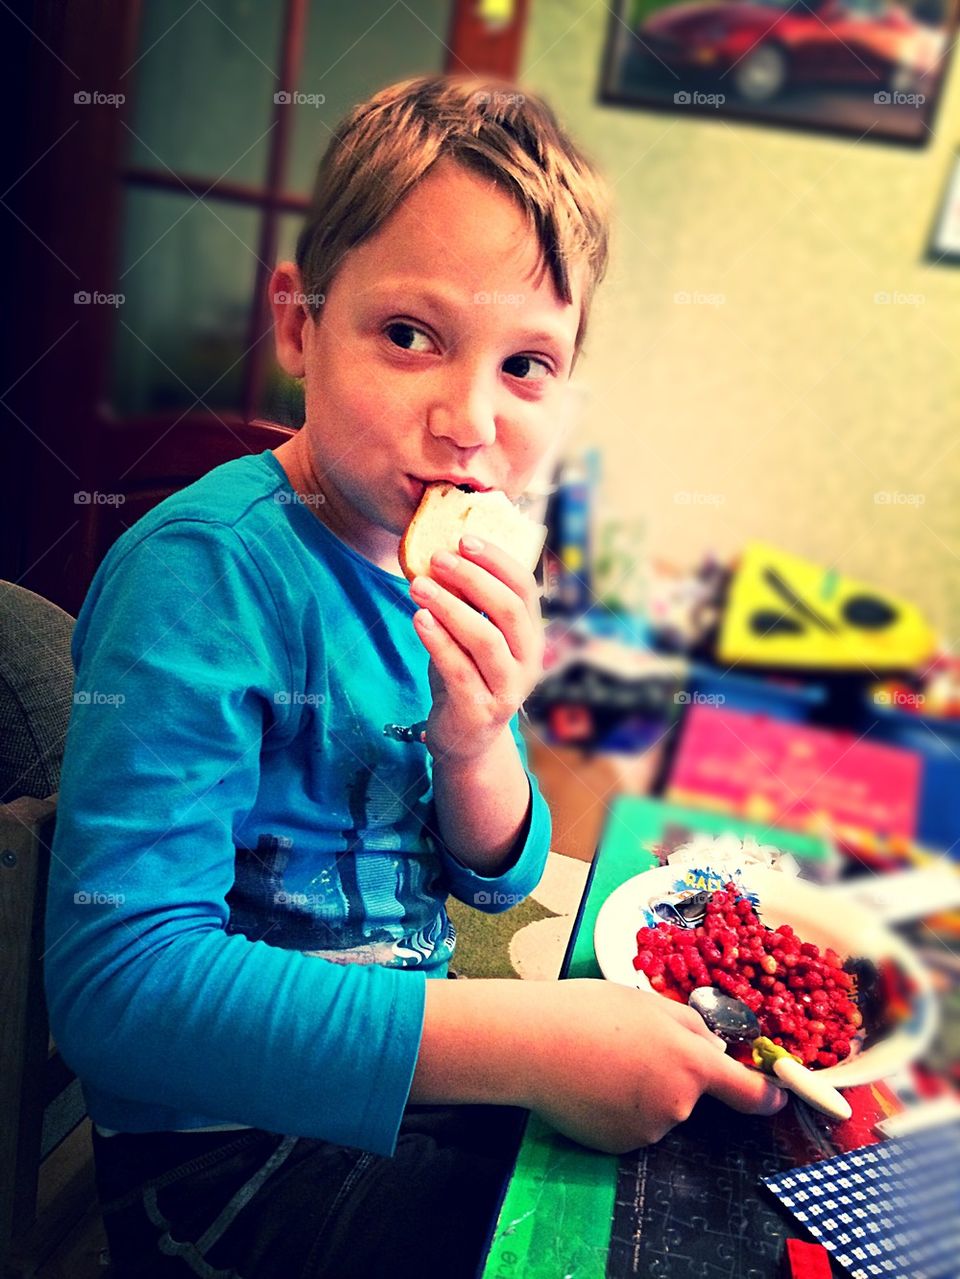 Boy eating berries